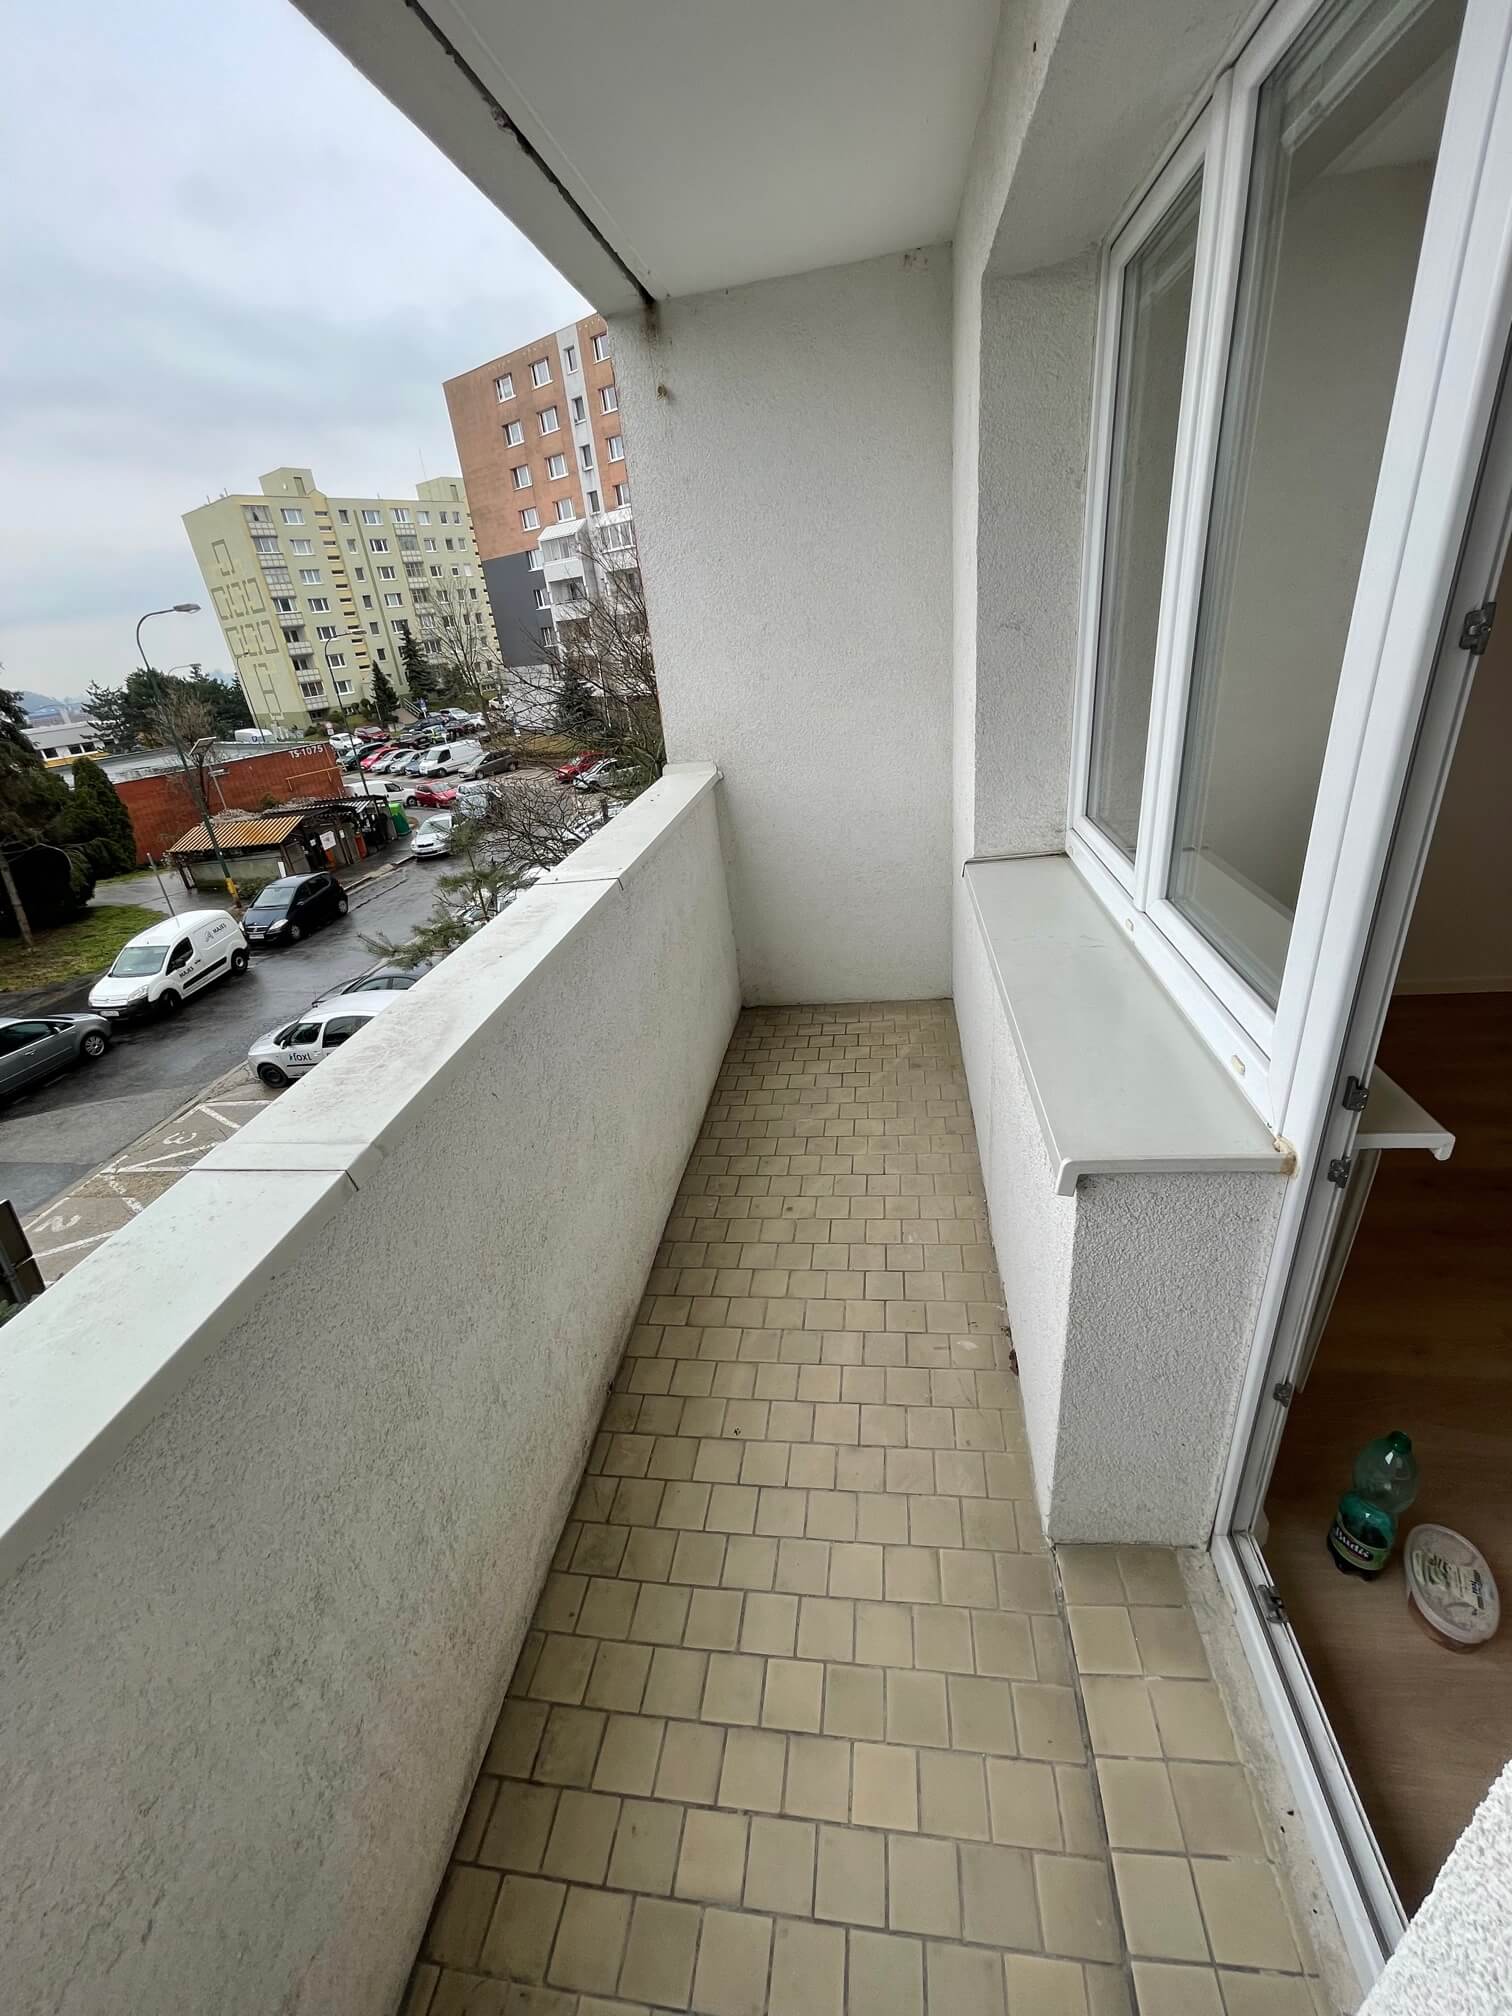 Prenajaté: Izby na prenájom v 3 izbovom byte, Karlovka, Kolísková 6 v Bratislave, 300€ izba, izba má 20m2 s  balkónom,-14